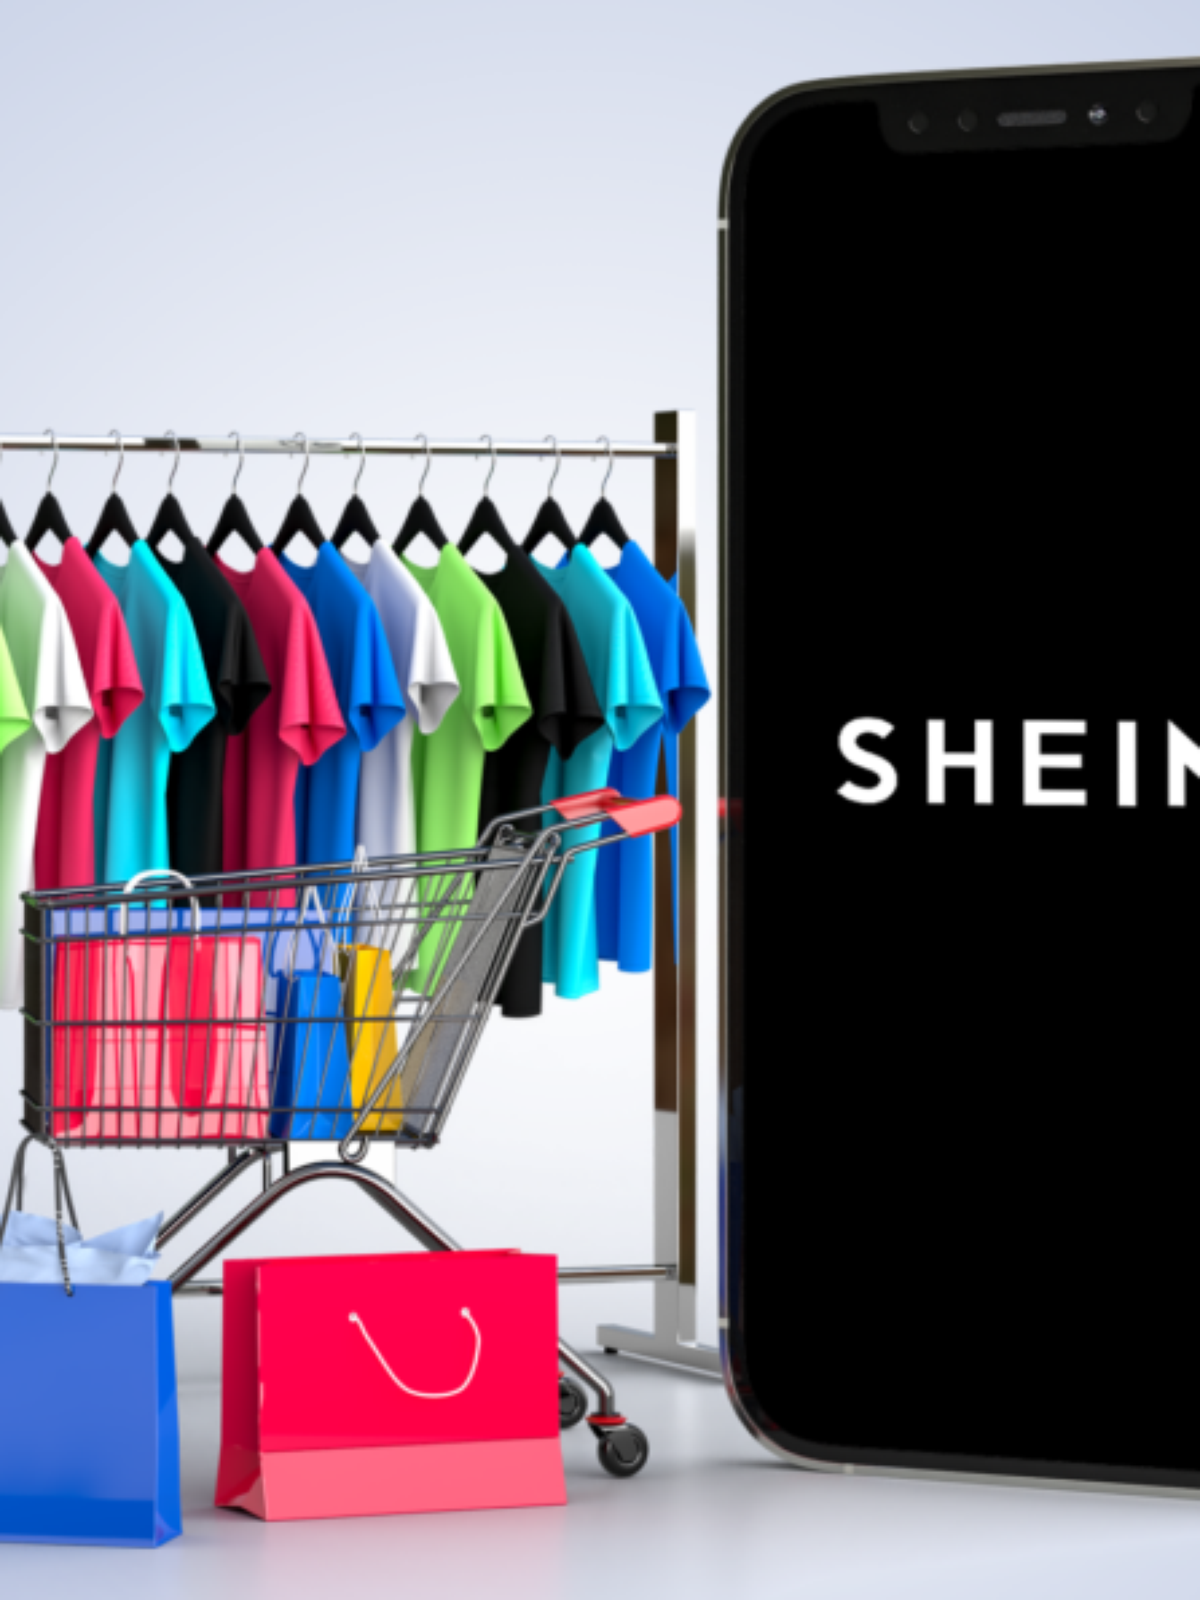 Shein abre primeira loja temporária da marca no Brasil com compra local –  Ginga Notícias